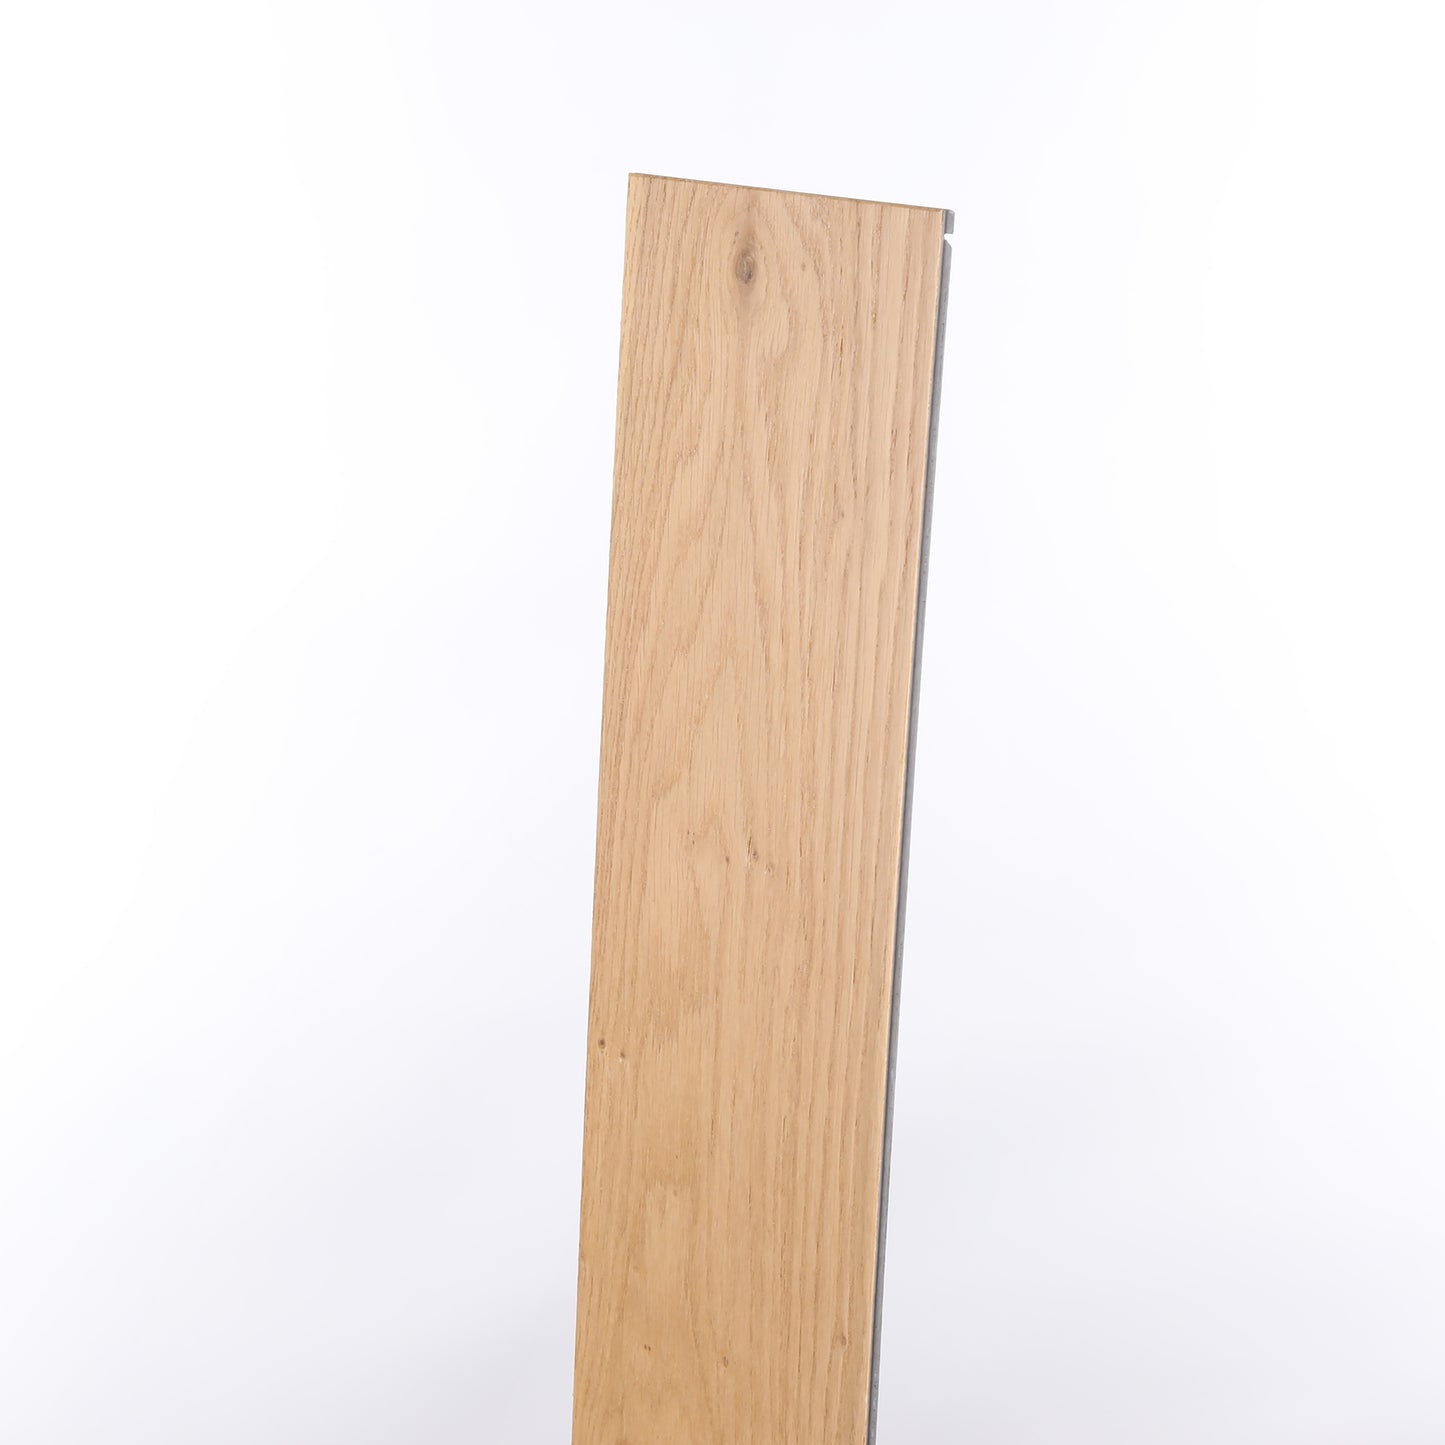 7mm Honeytone White Oak Waterproof Engineered Hardwood Flooring 5 in. Wide x Varying Length Long